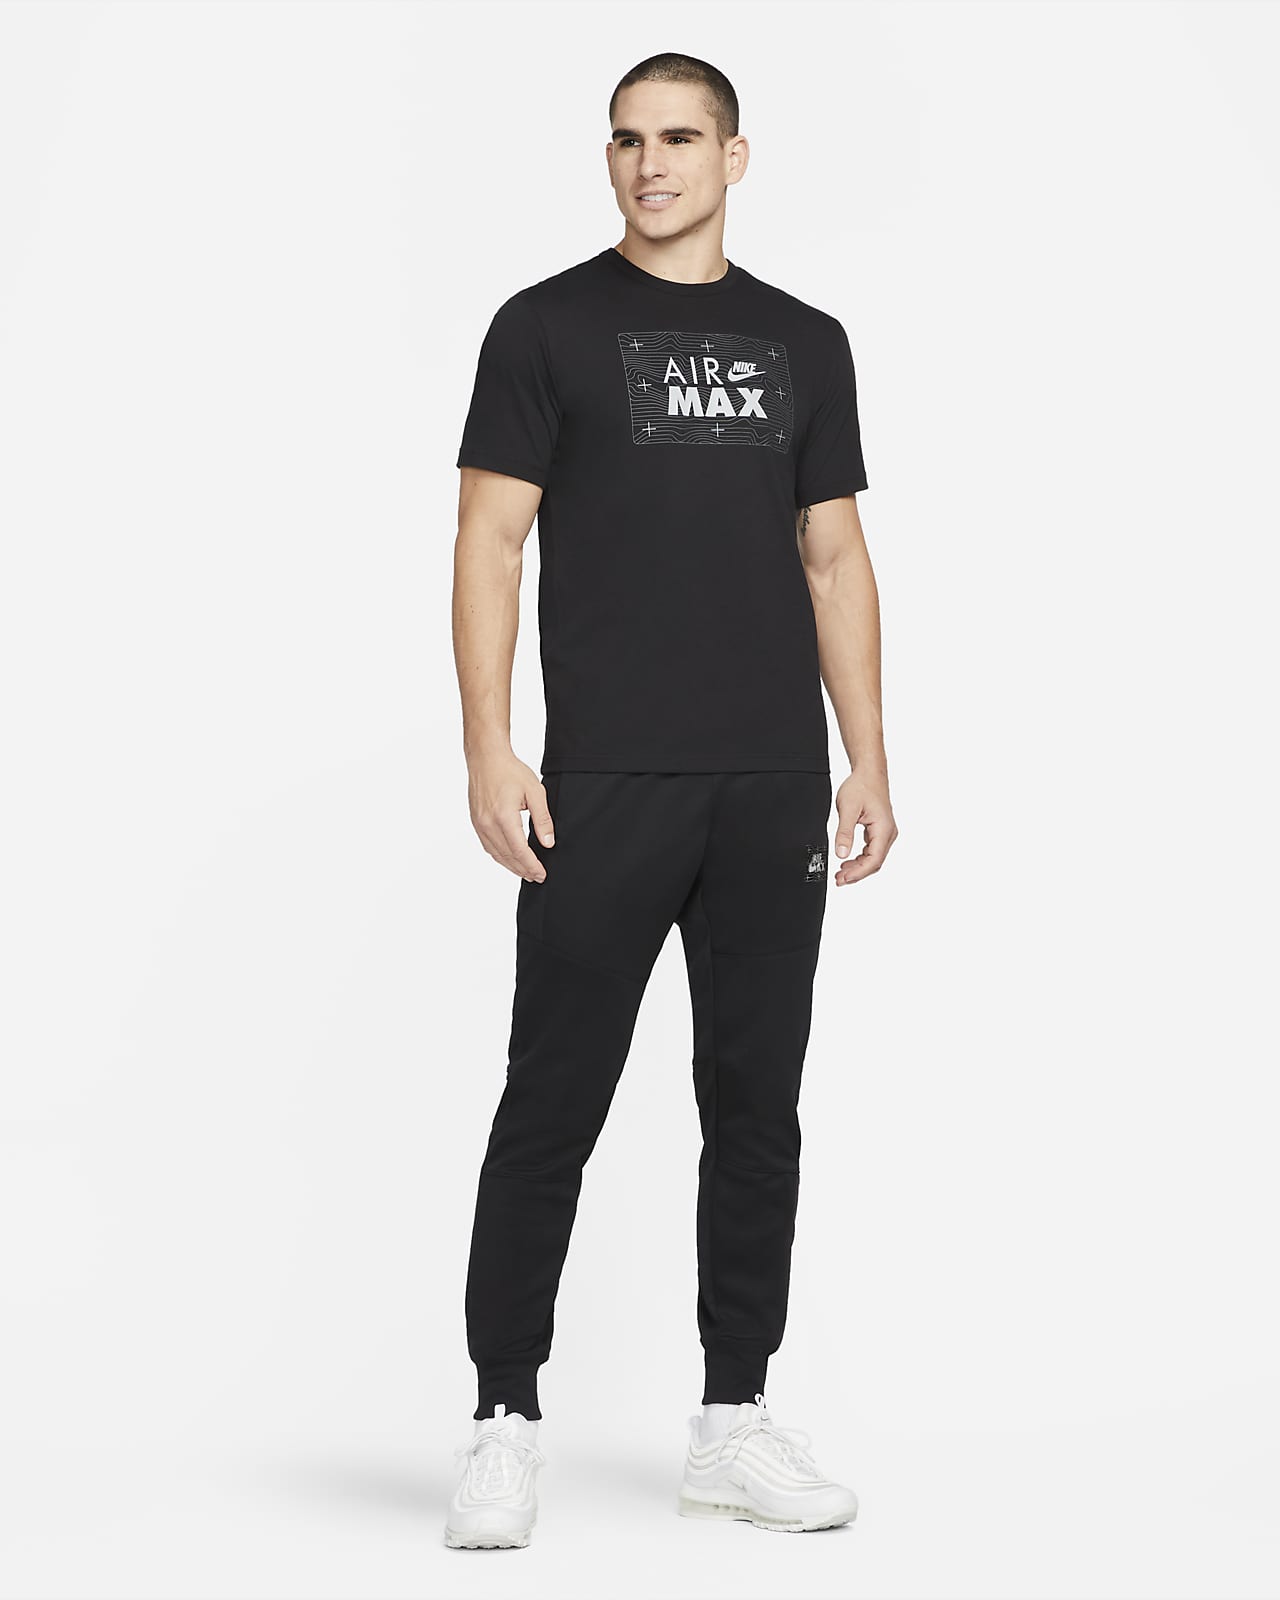 مثبط للسعال Tee-shirt Nike Sportswear Air Max pour Homme. Nike CA مثبط للسعال